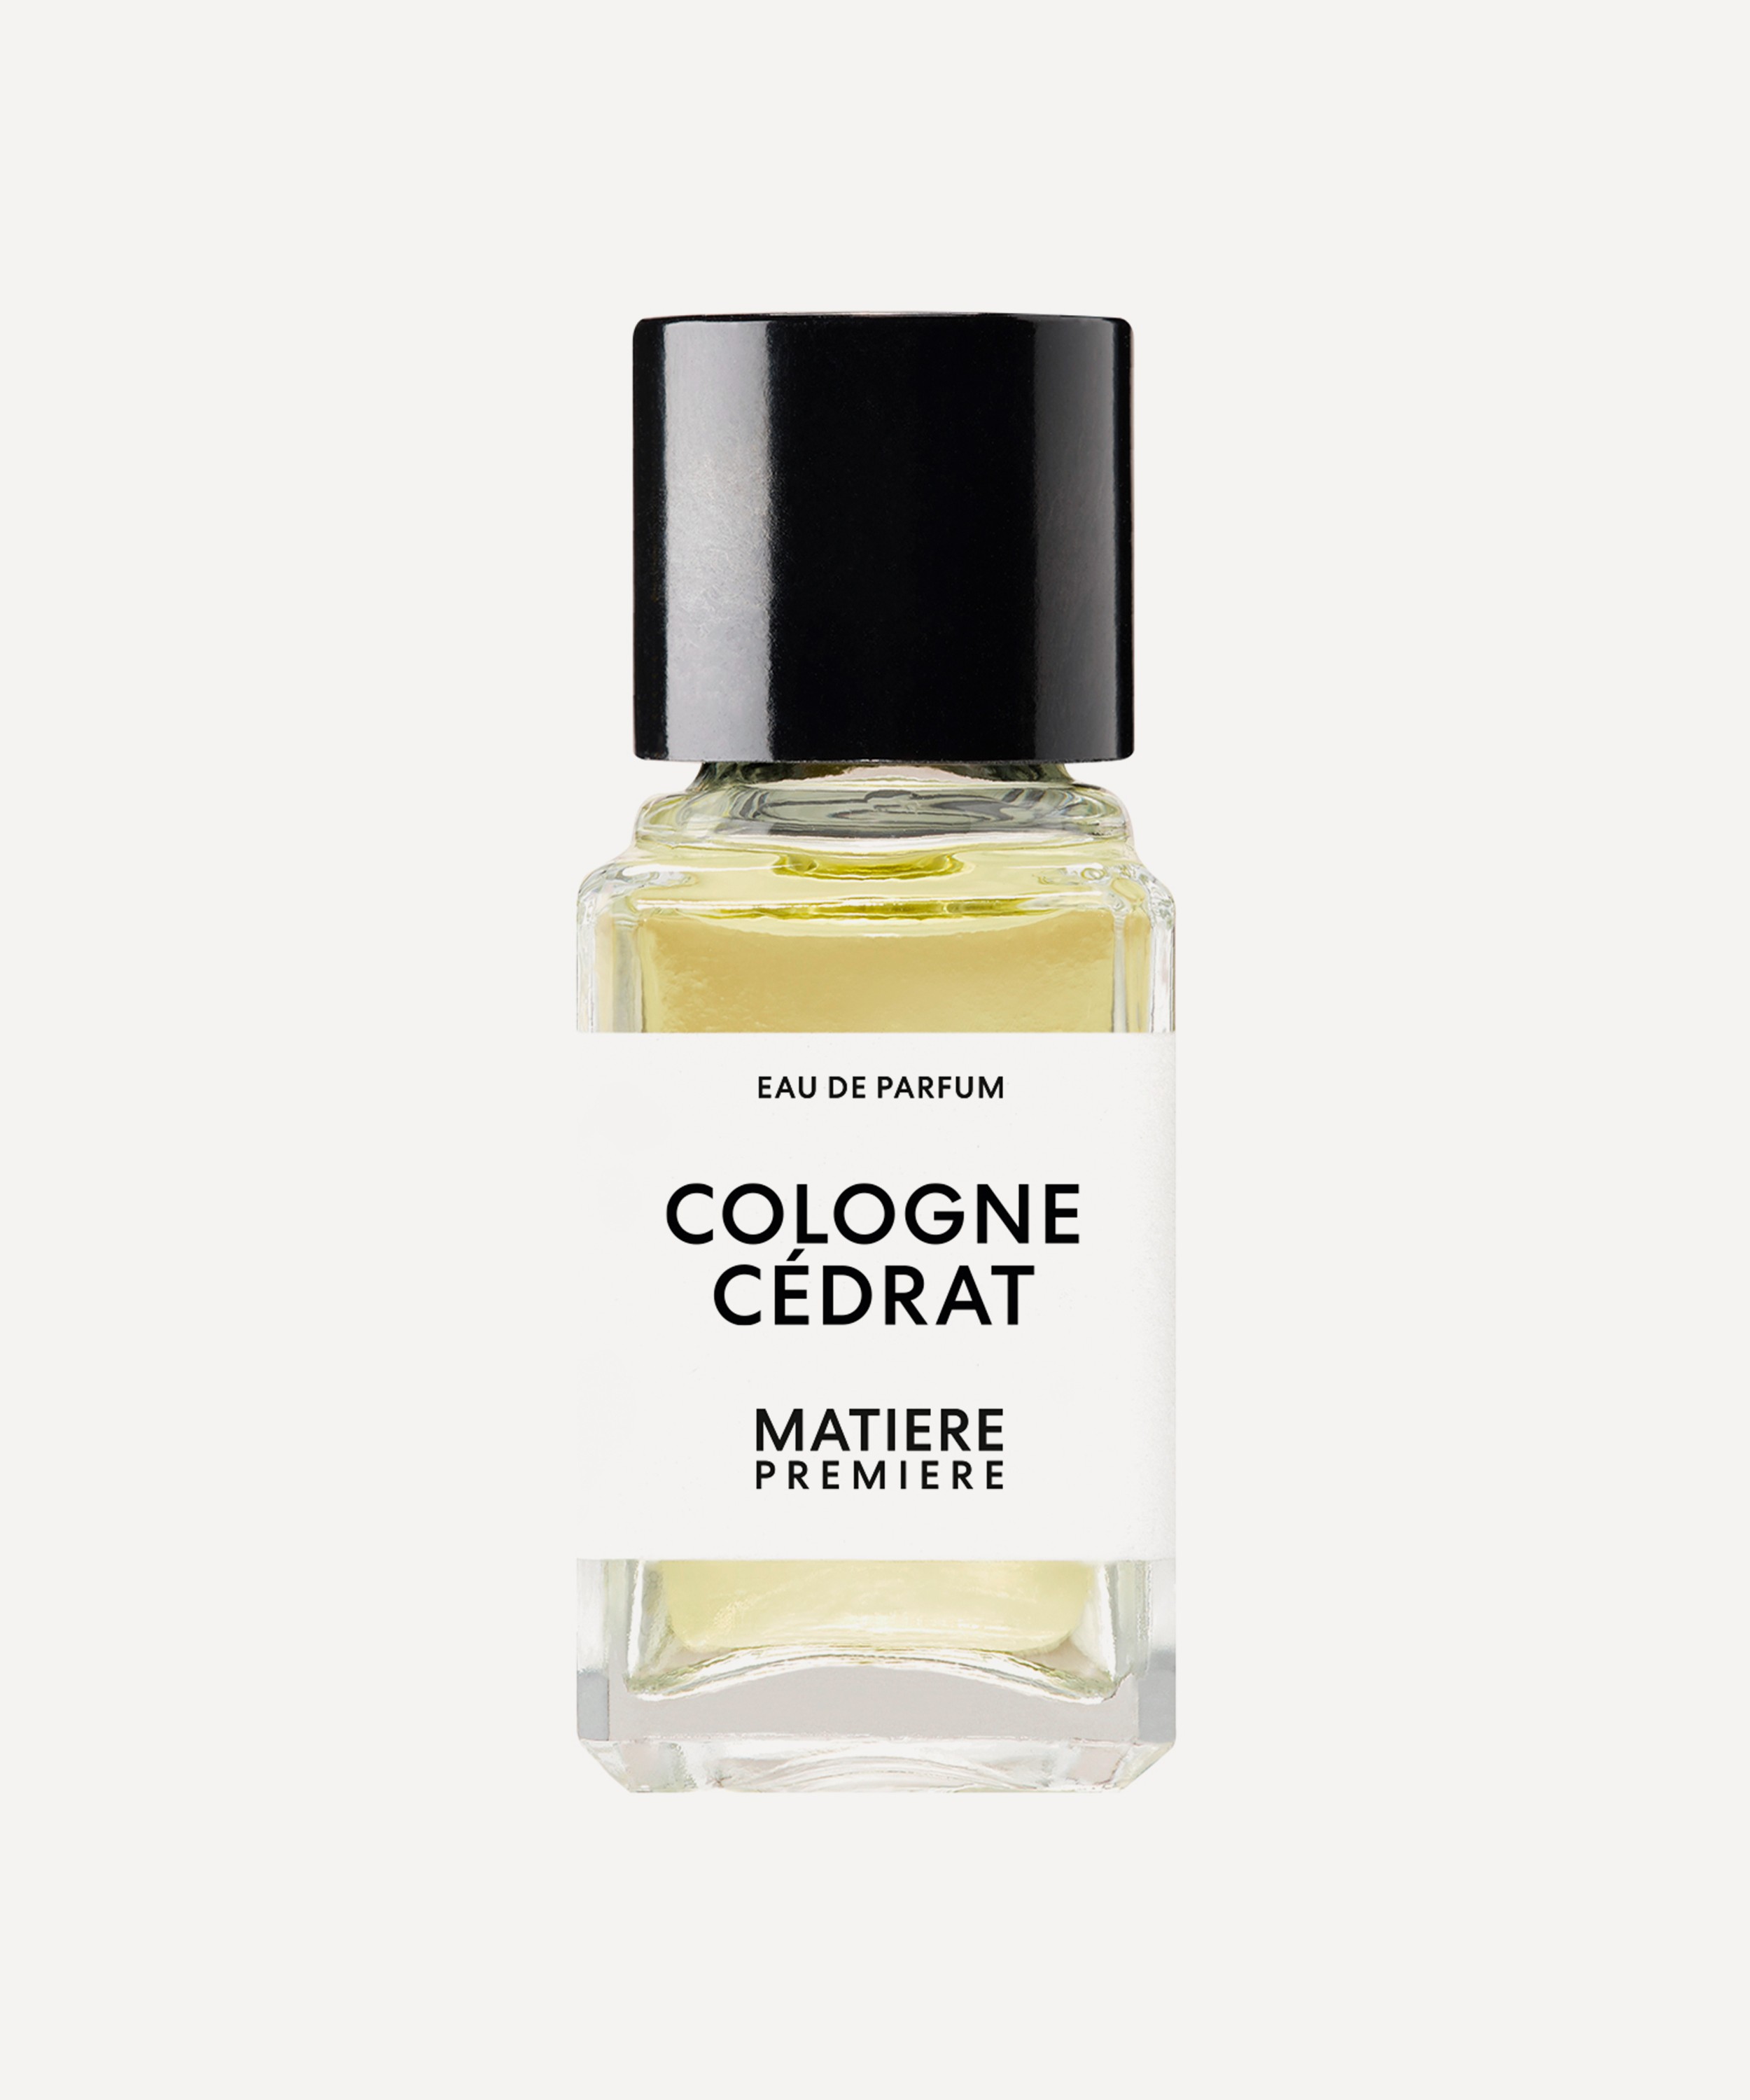 MATIERE PREMIERE - Cologne Cédrat Eau de Parfum 6ml